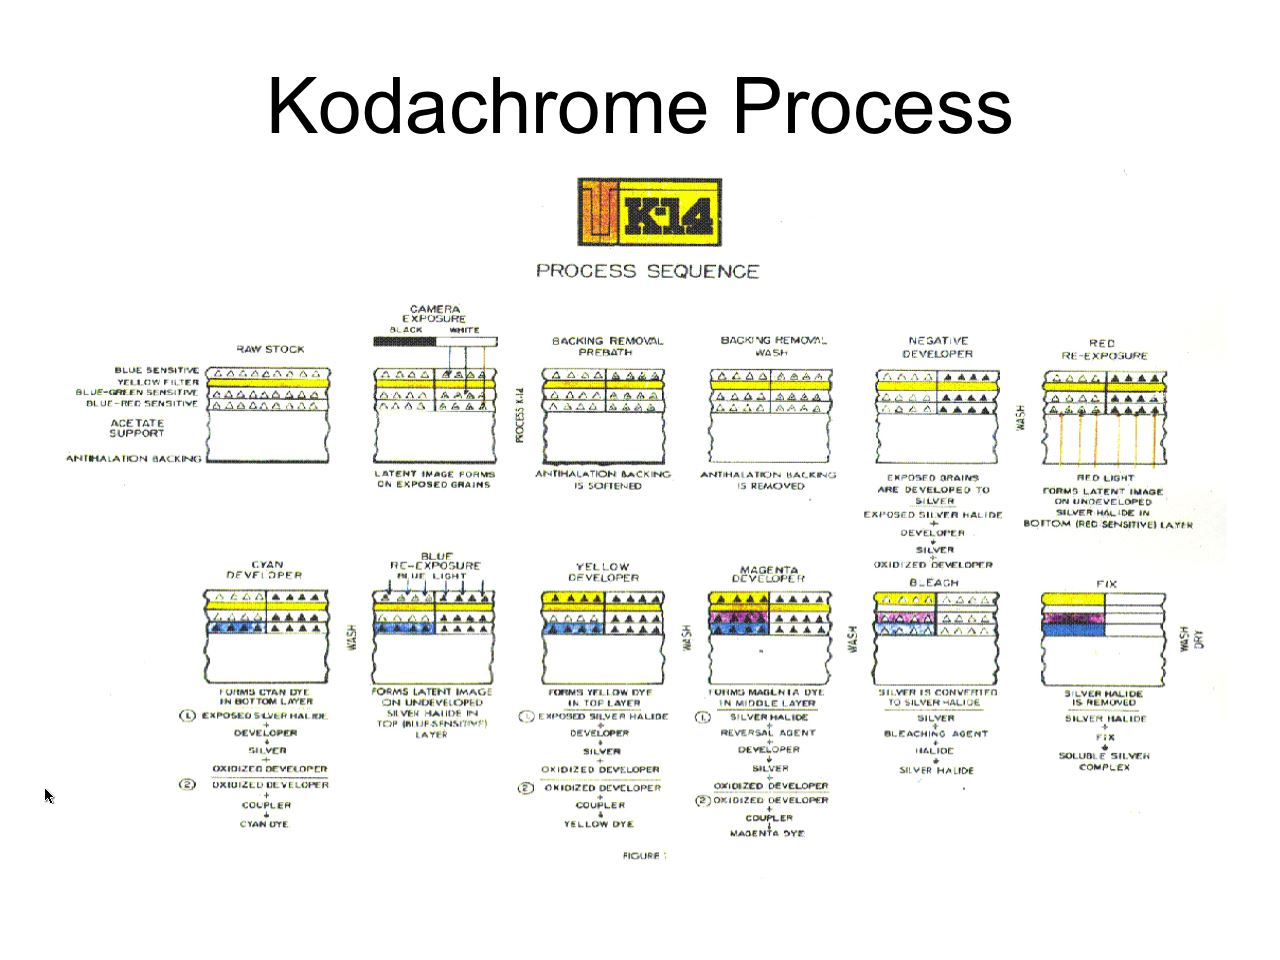 How to Develop Kodachrome Film (B&W Hand Processing & Kodak's K-14 Process)